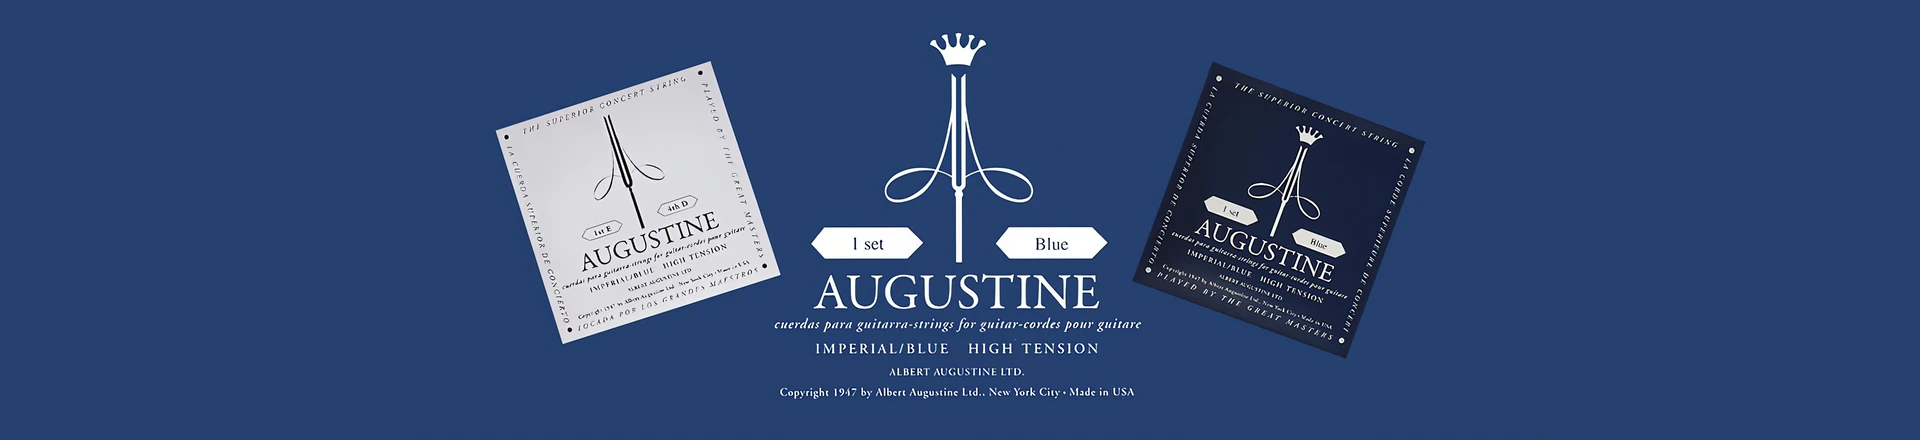 Augustine prezentuje najnowsze struny Imperial Blue 